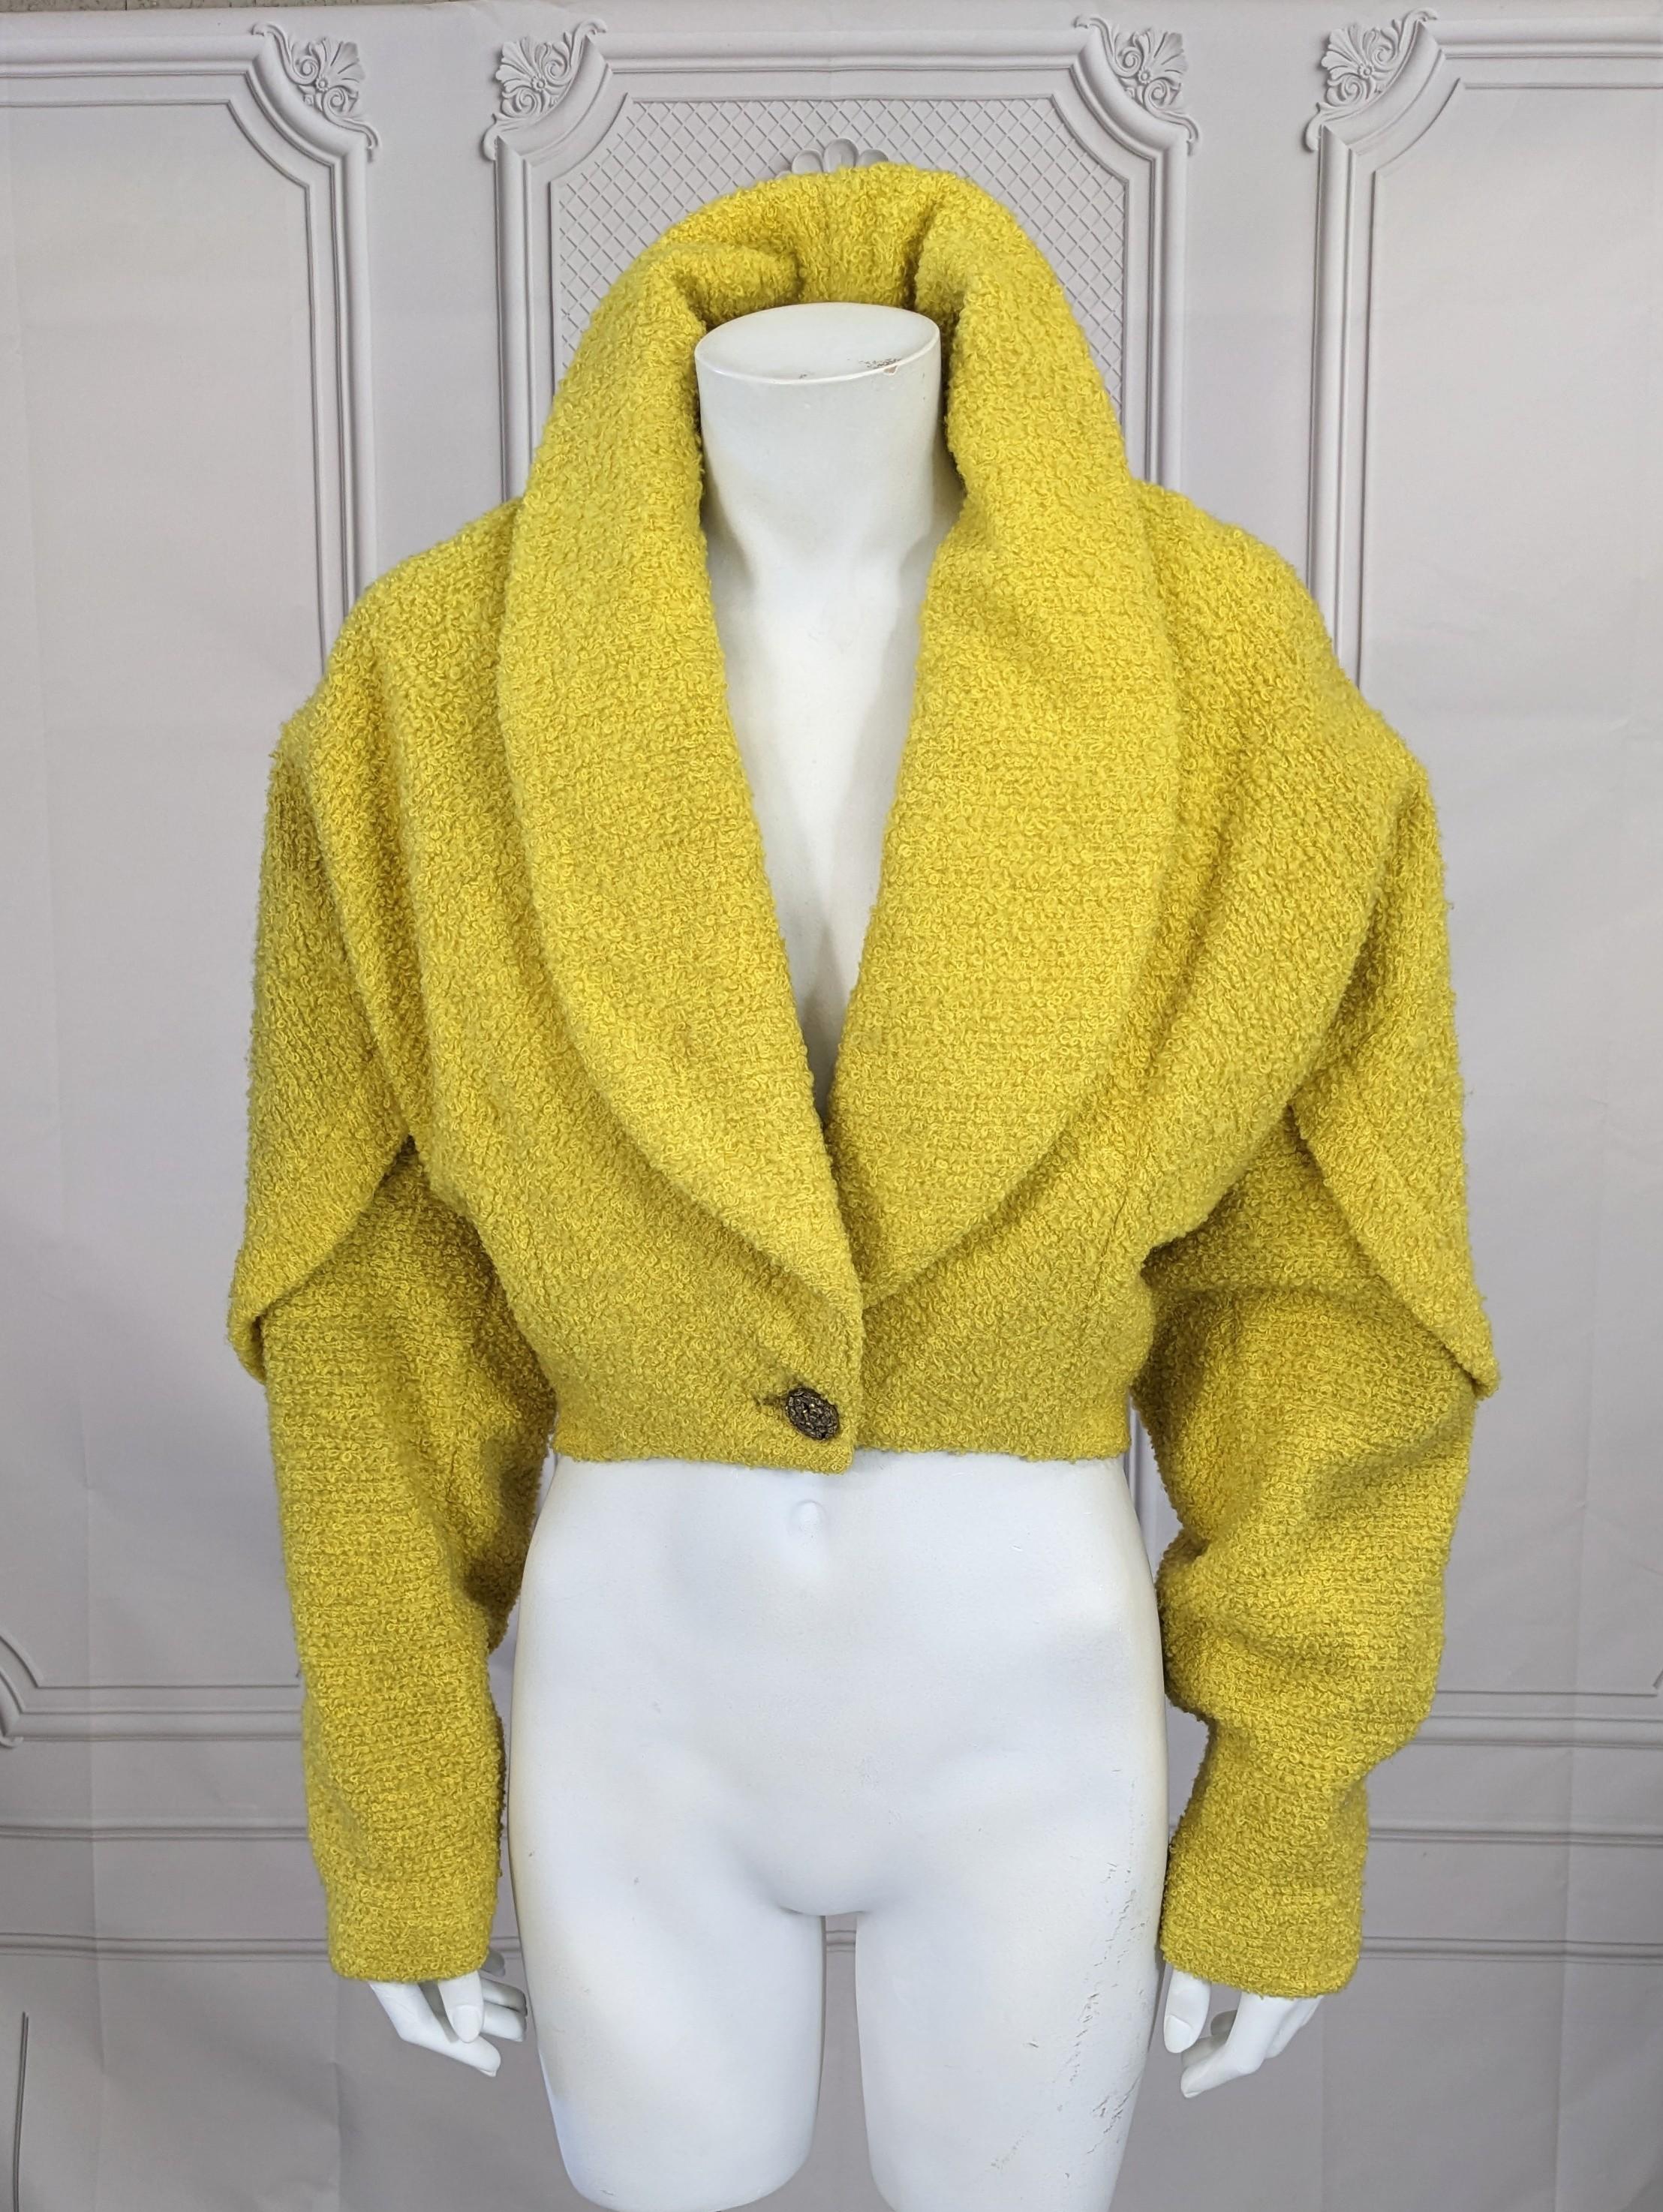 Ungewöhnliche chromgelbe Bolero-Jacke aus Wolle von Ranleigh aus den 1950er Jahren, die bei I. Magnin verkauft wurde und eine Alaia-Form hat. Bouclé-Schlingenwolle in leuchtenden Farben. Durchgehender Schnitt an Schultern und Büste mit enger Taille.